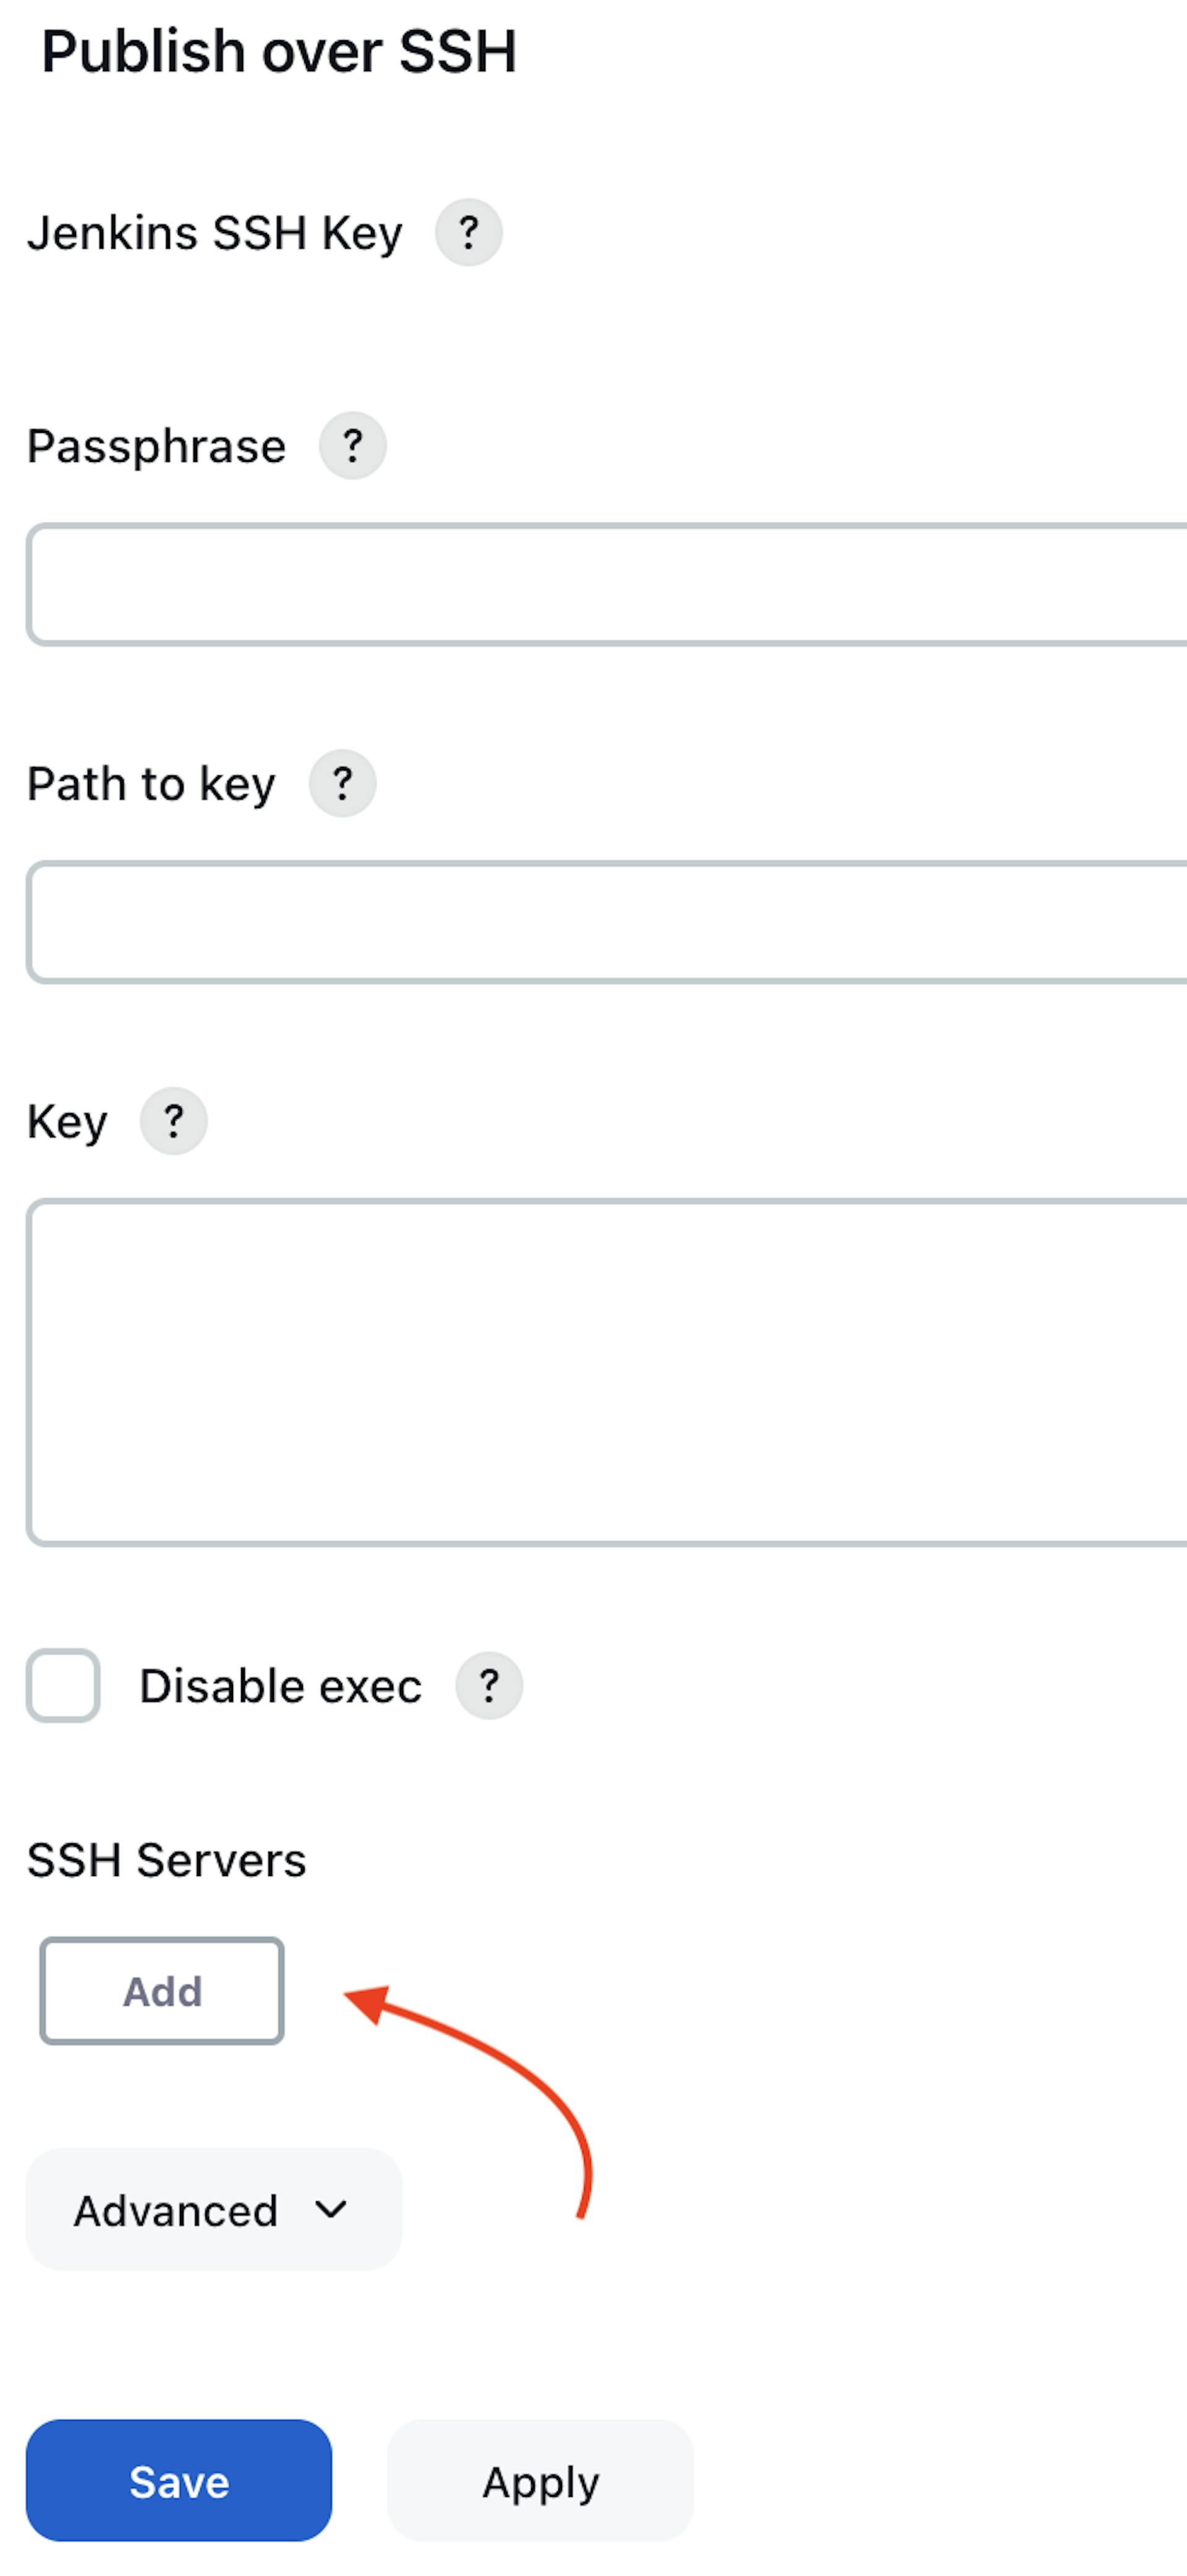 A captura de tela do terminal de instância do AWS EC2 Virtual Server com o plugin "Publish over SSH"